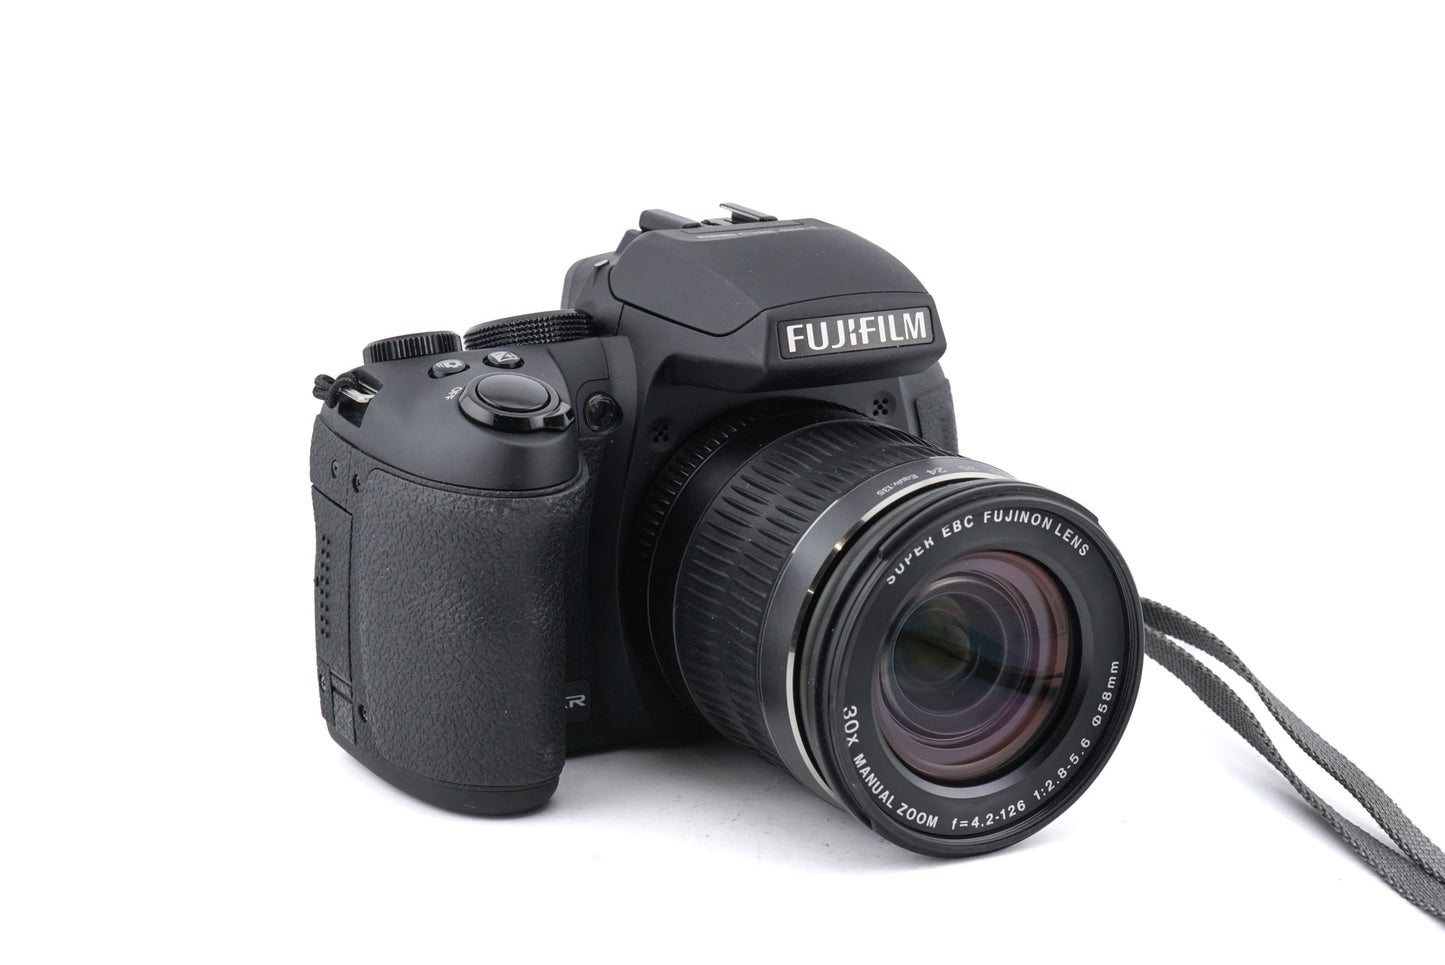 Fujifilm Finepix HS30 EXR